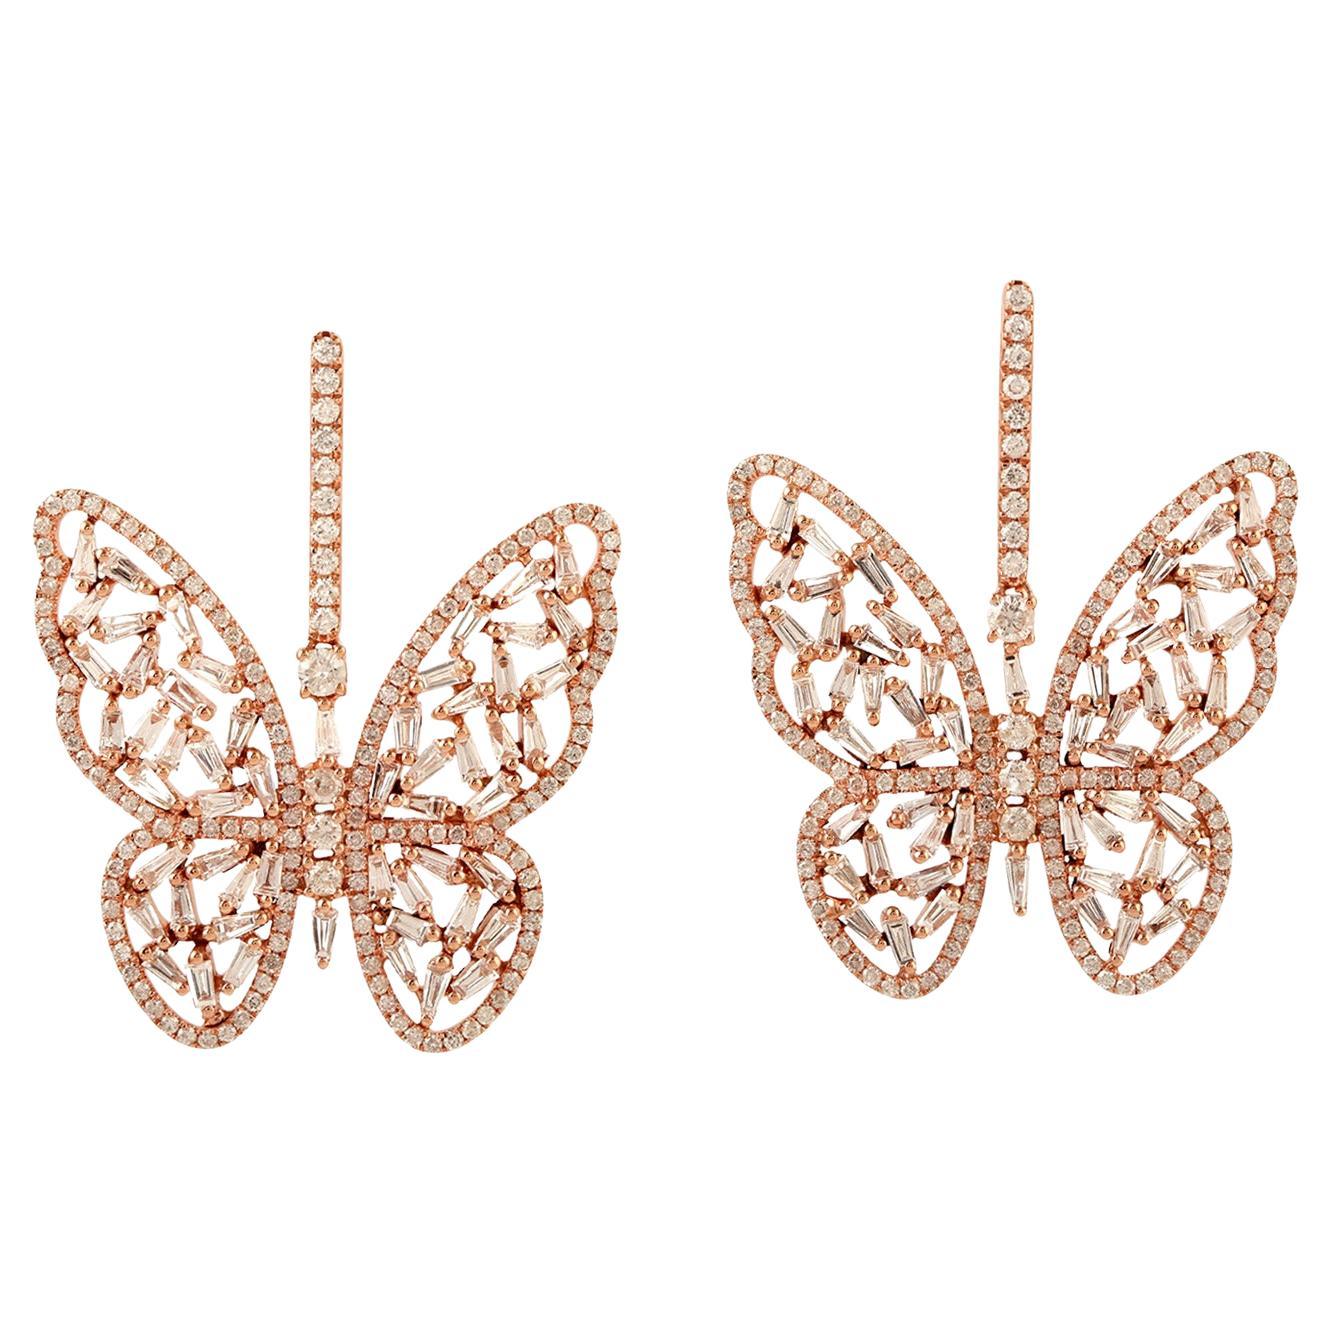 Ohrhänger in Schmetterlingsform aus 18 Karat Gold mit Diamanten in Diamanten gefasst